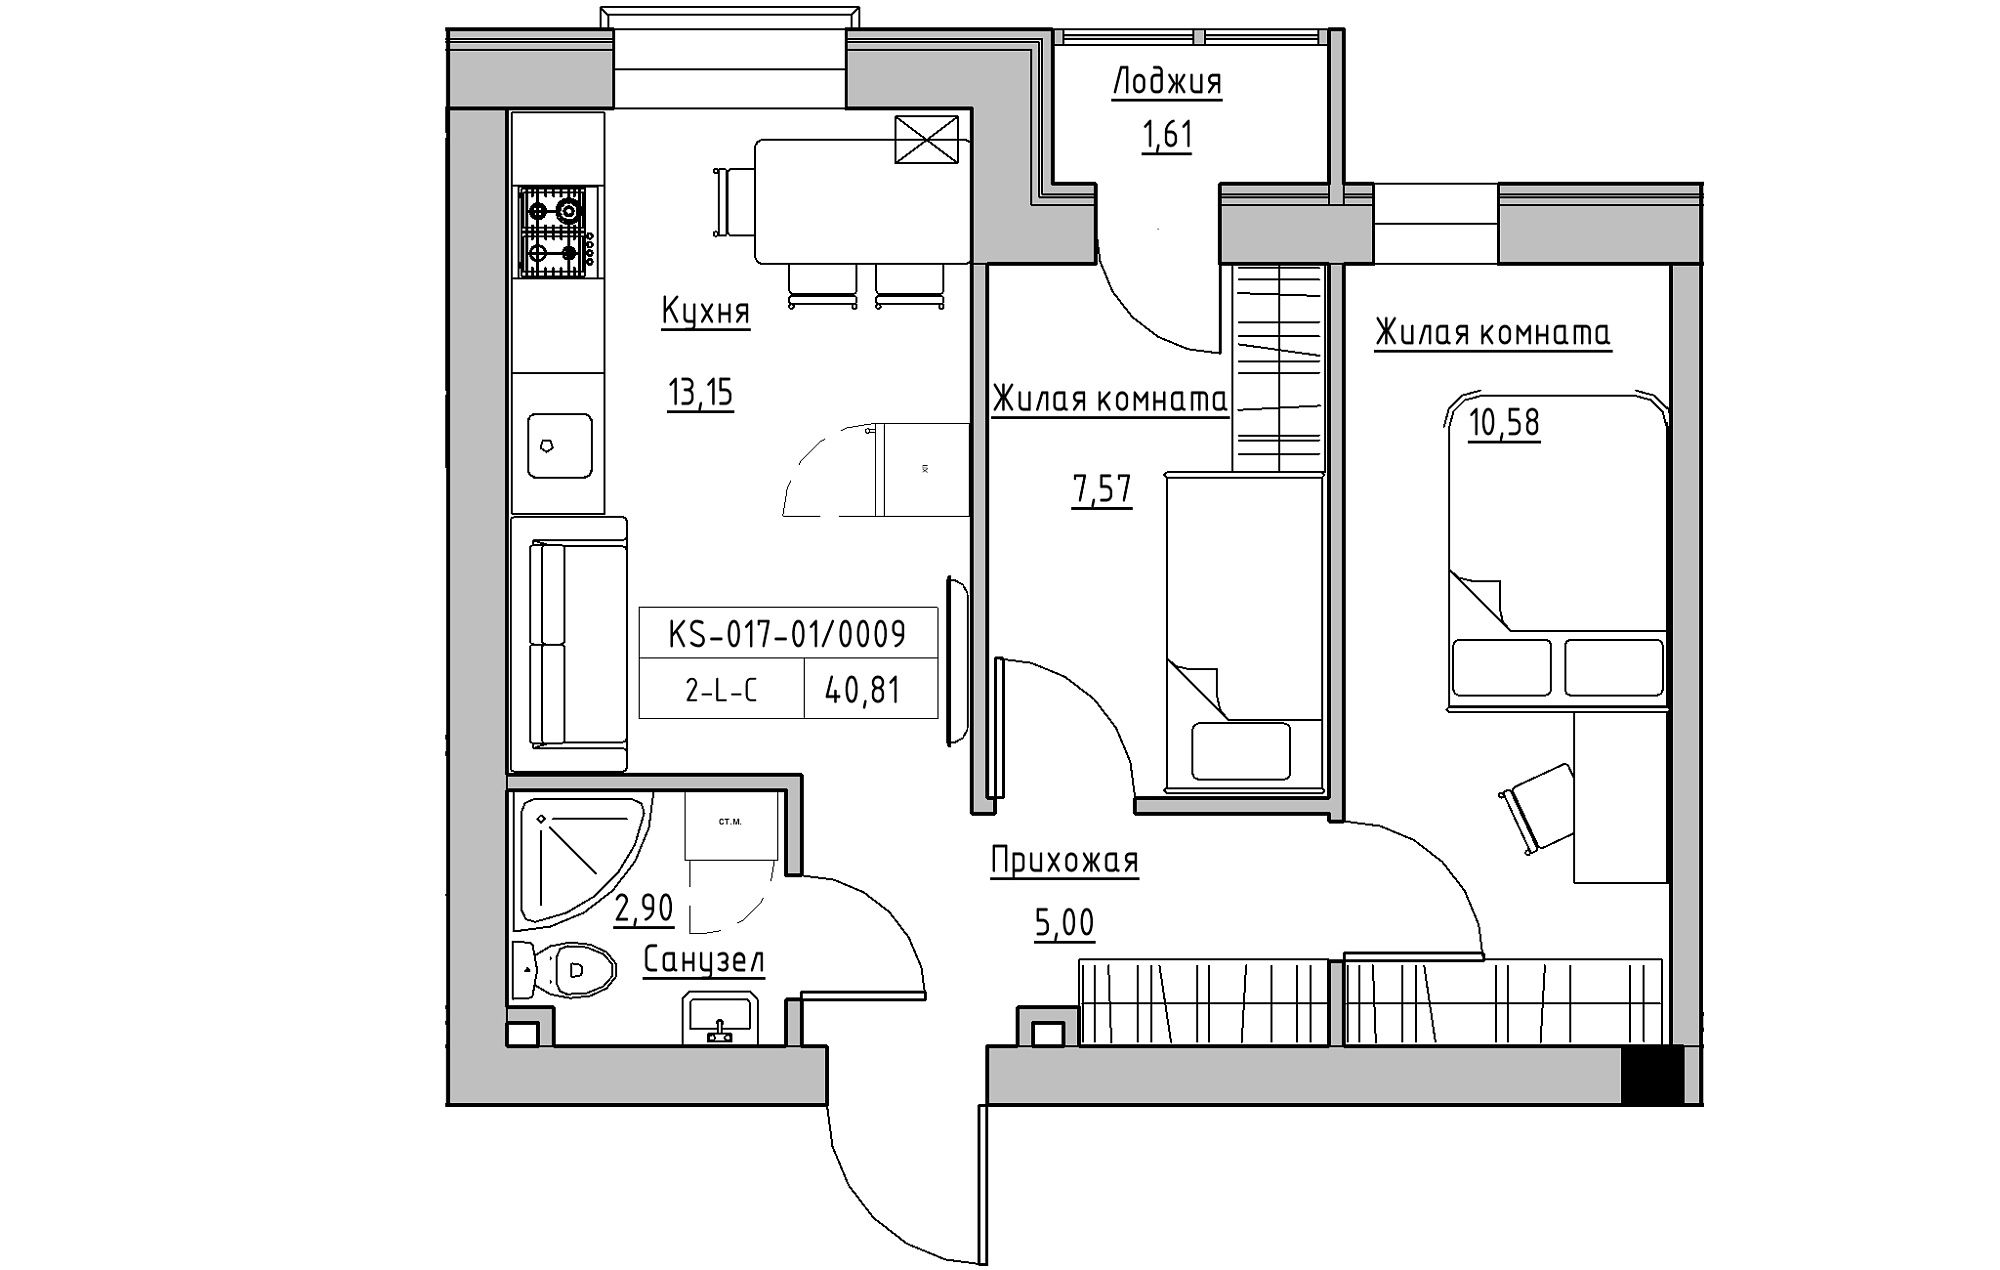 Планировка 2-к квартира площей 40.81м2, KS-017-01/0009.